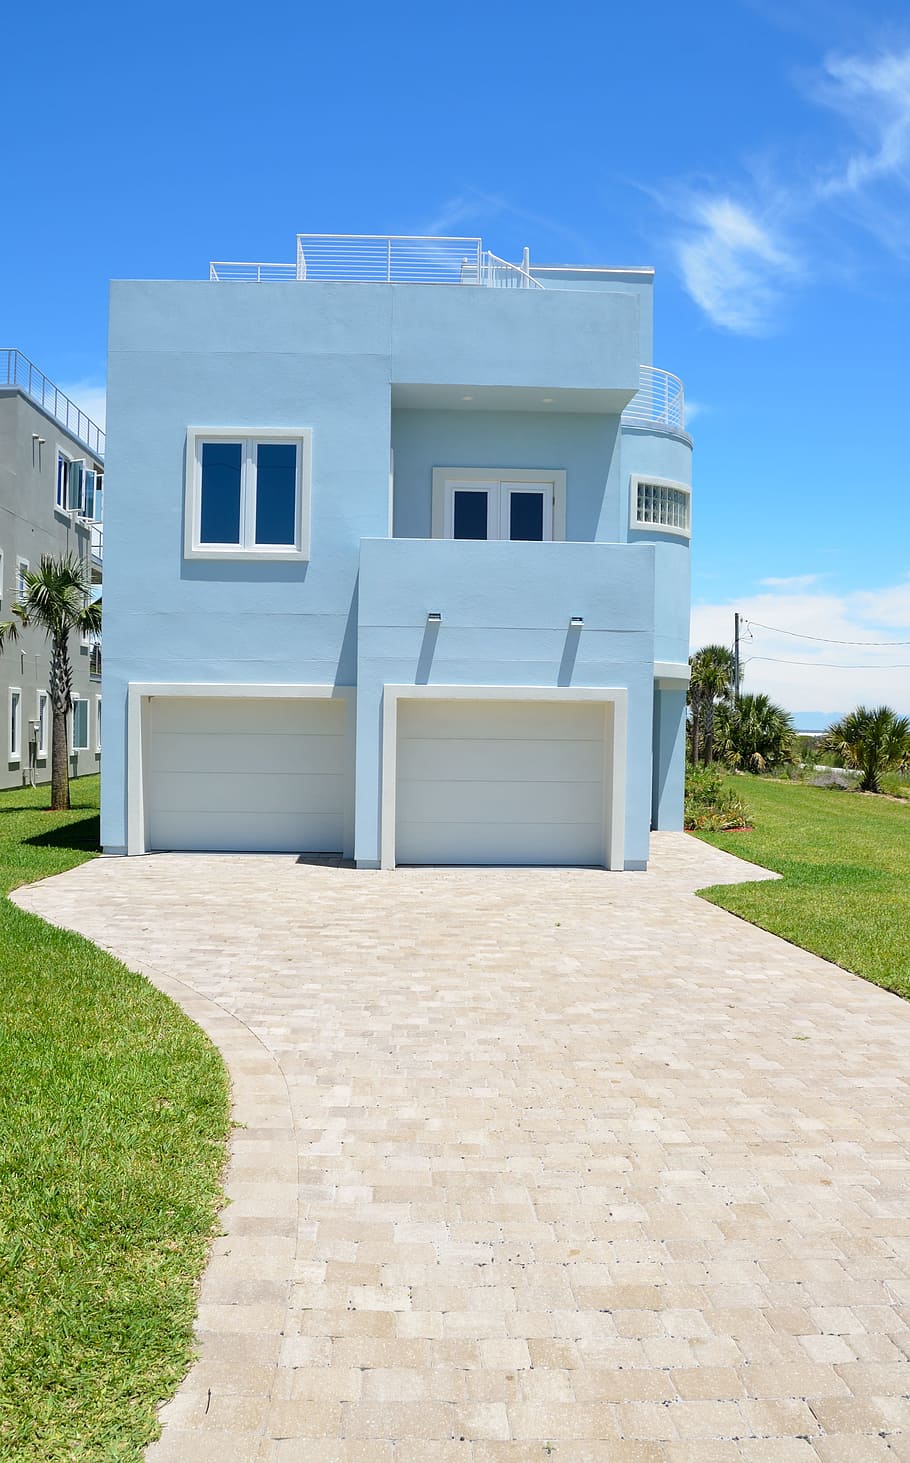 blue concrete house, Florida, Beach, Home, House, new, florida beach home, house, architecture, exterior, sky